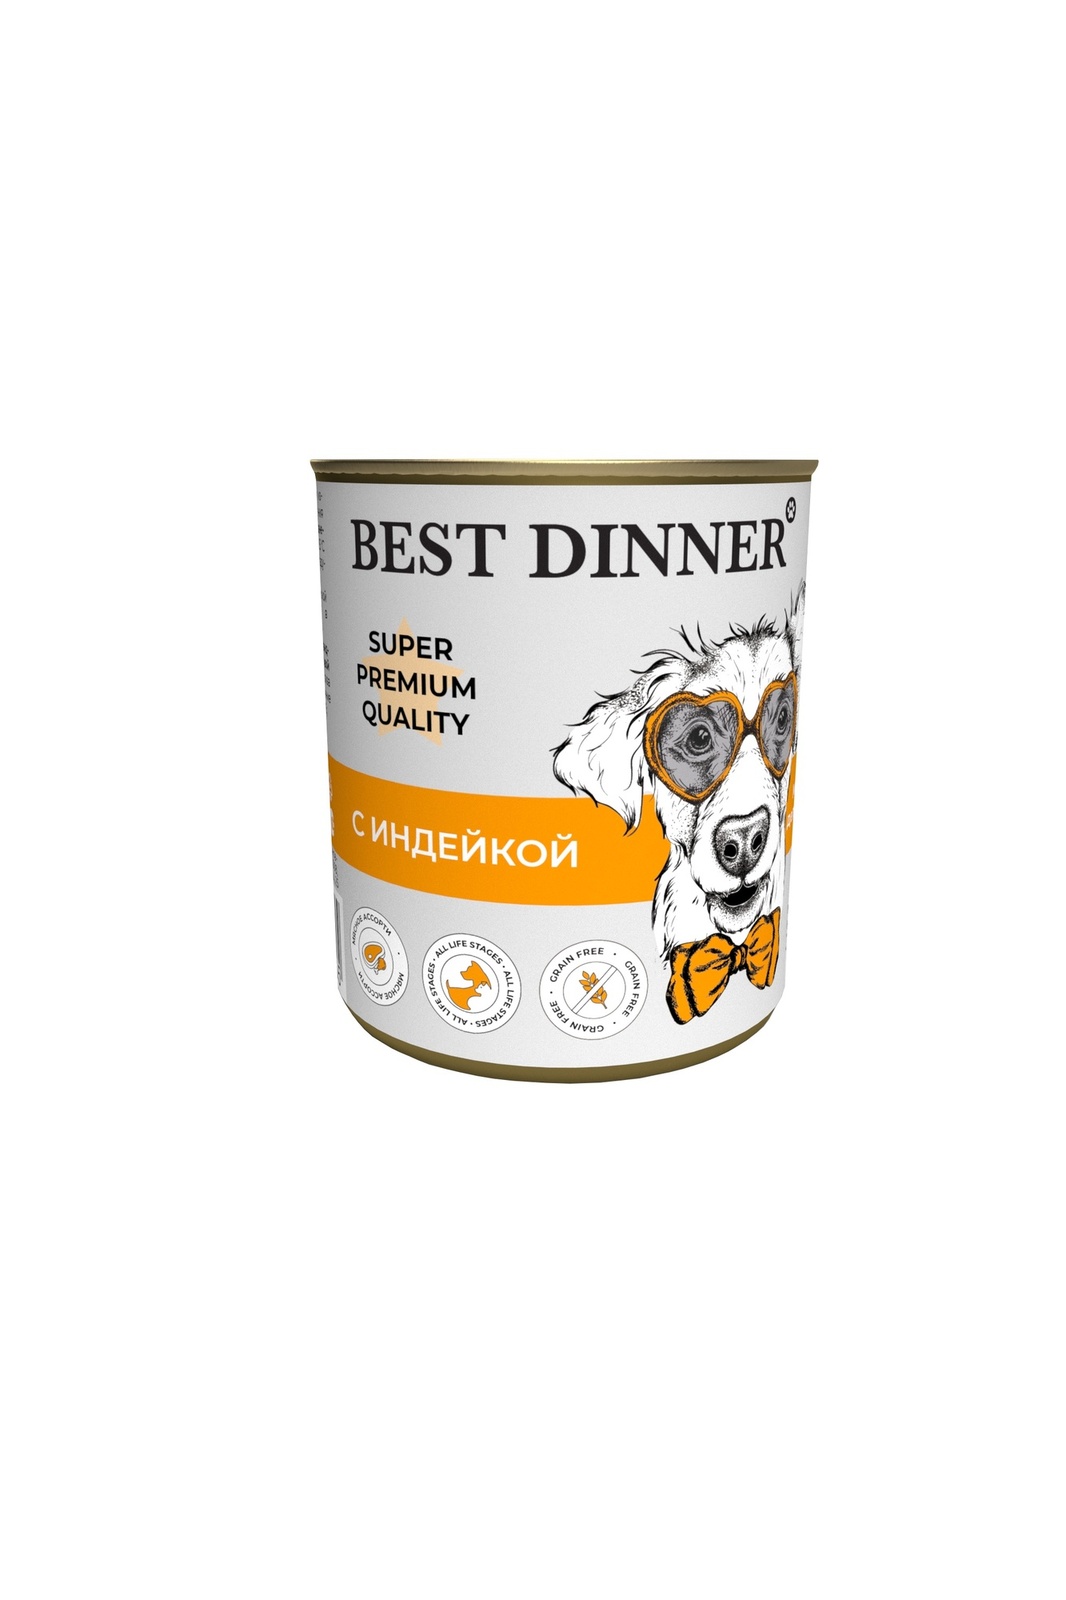 Best Dinner Best Dinner консервы для собак Super Premium С индейкой (340 г) best dinner best dinner консервы конина паштет для собак с чувствительным пищеварением 340 г